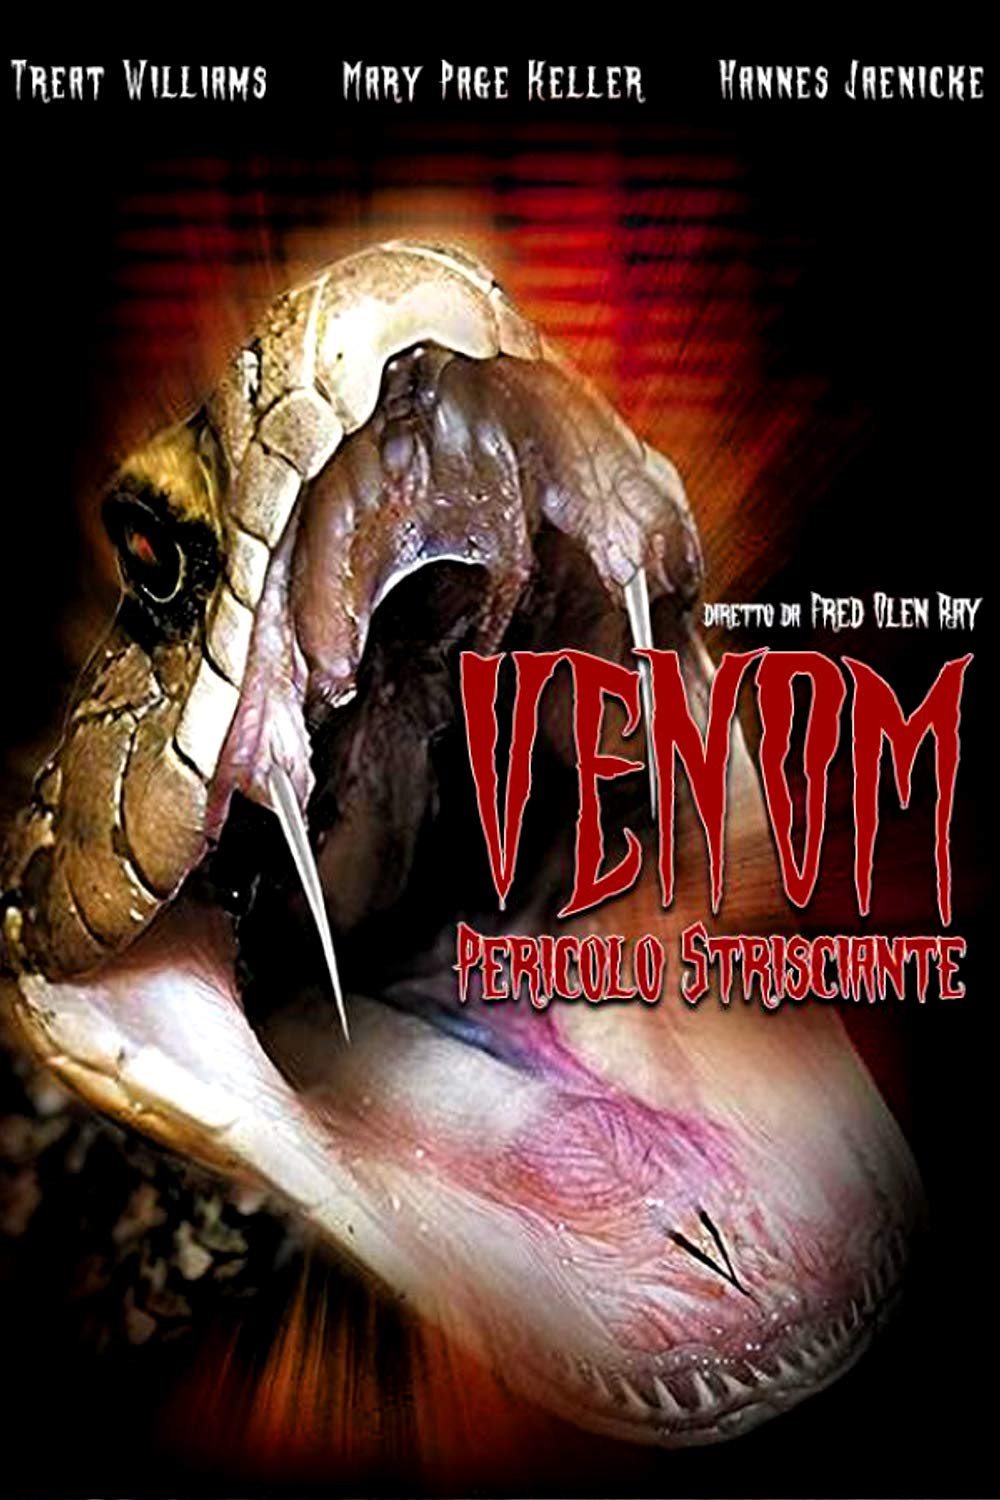 Venom – Pericolo strisciante [HD] (2001)